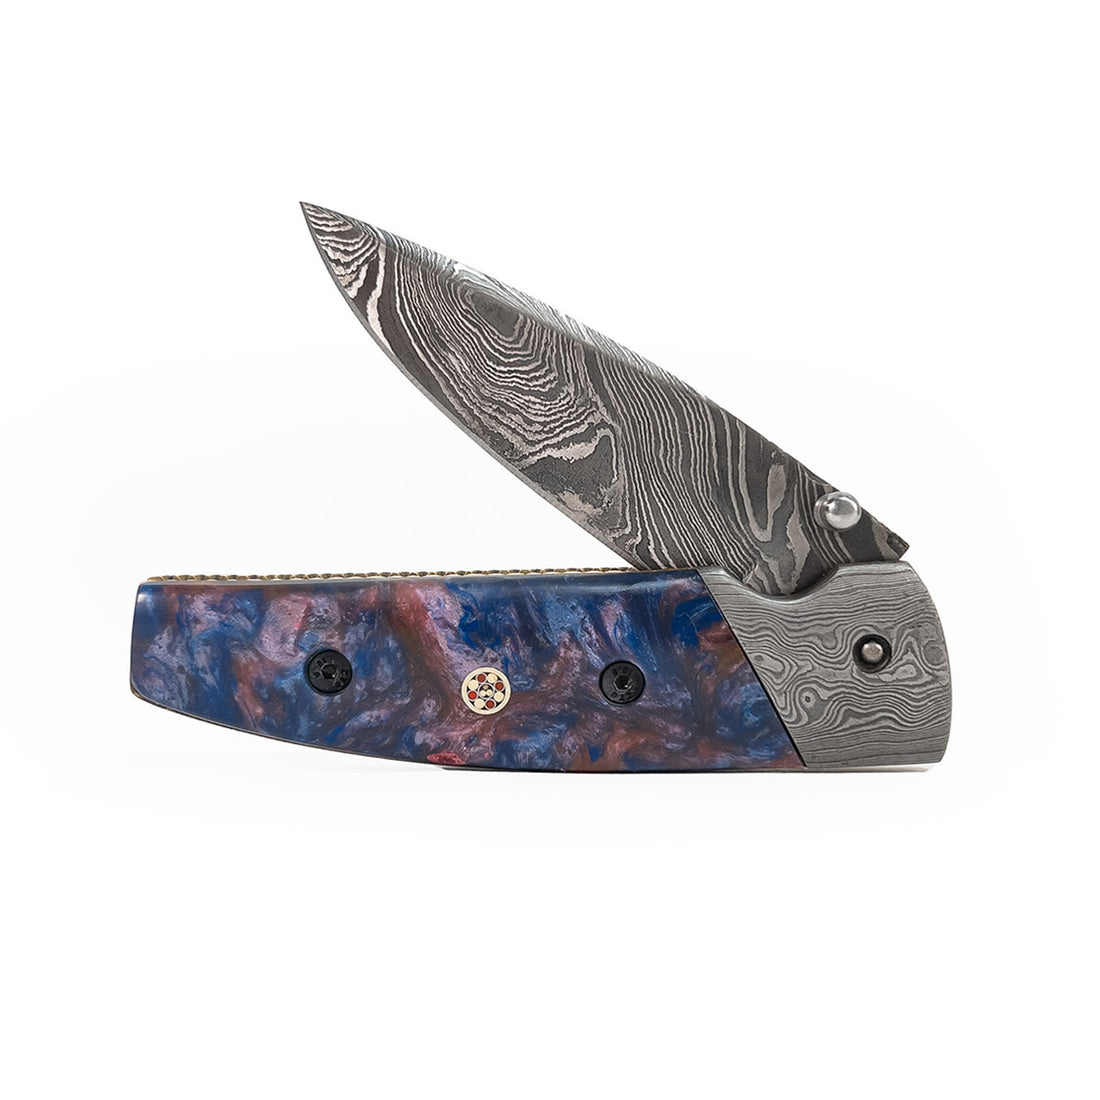 Canivete artesanal de coleção lâmina aço damasco.